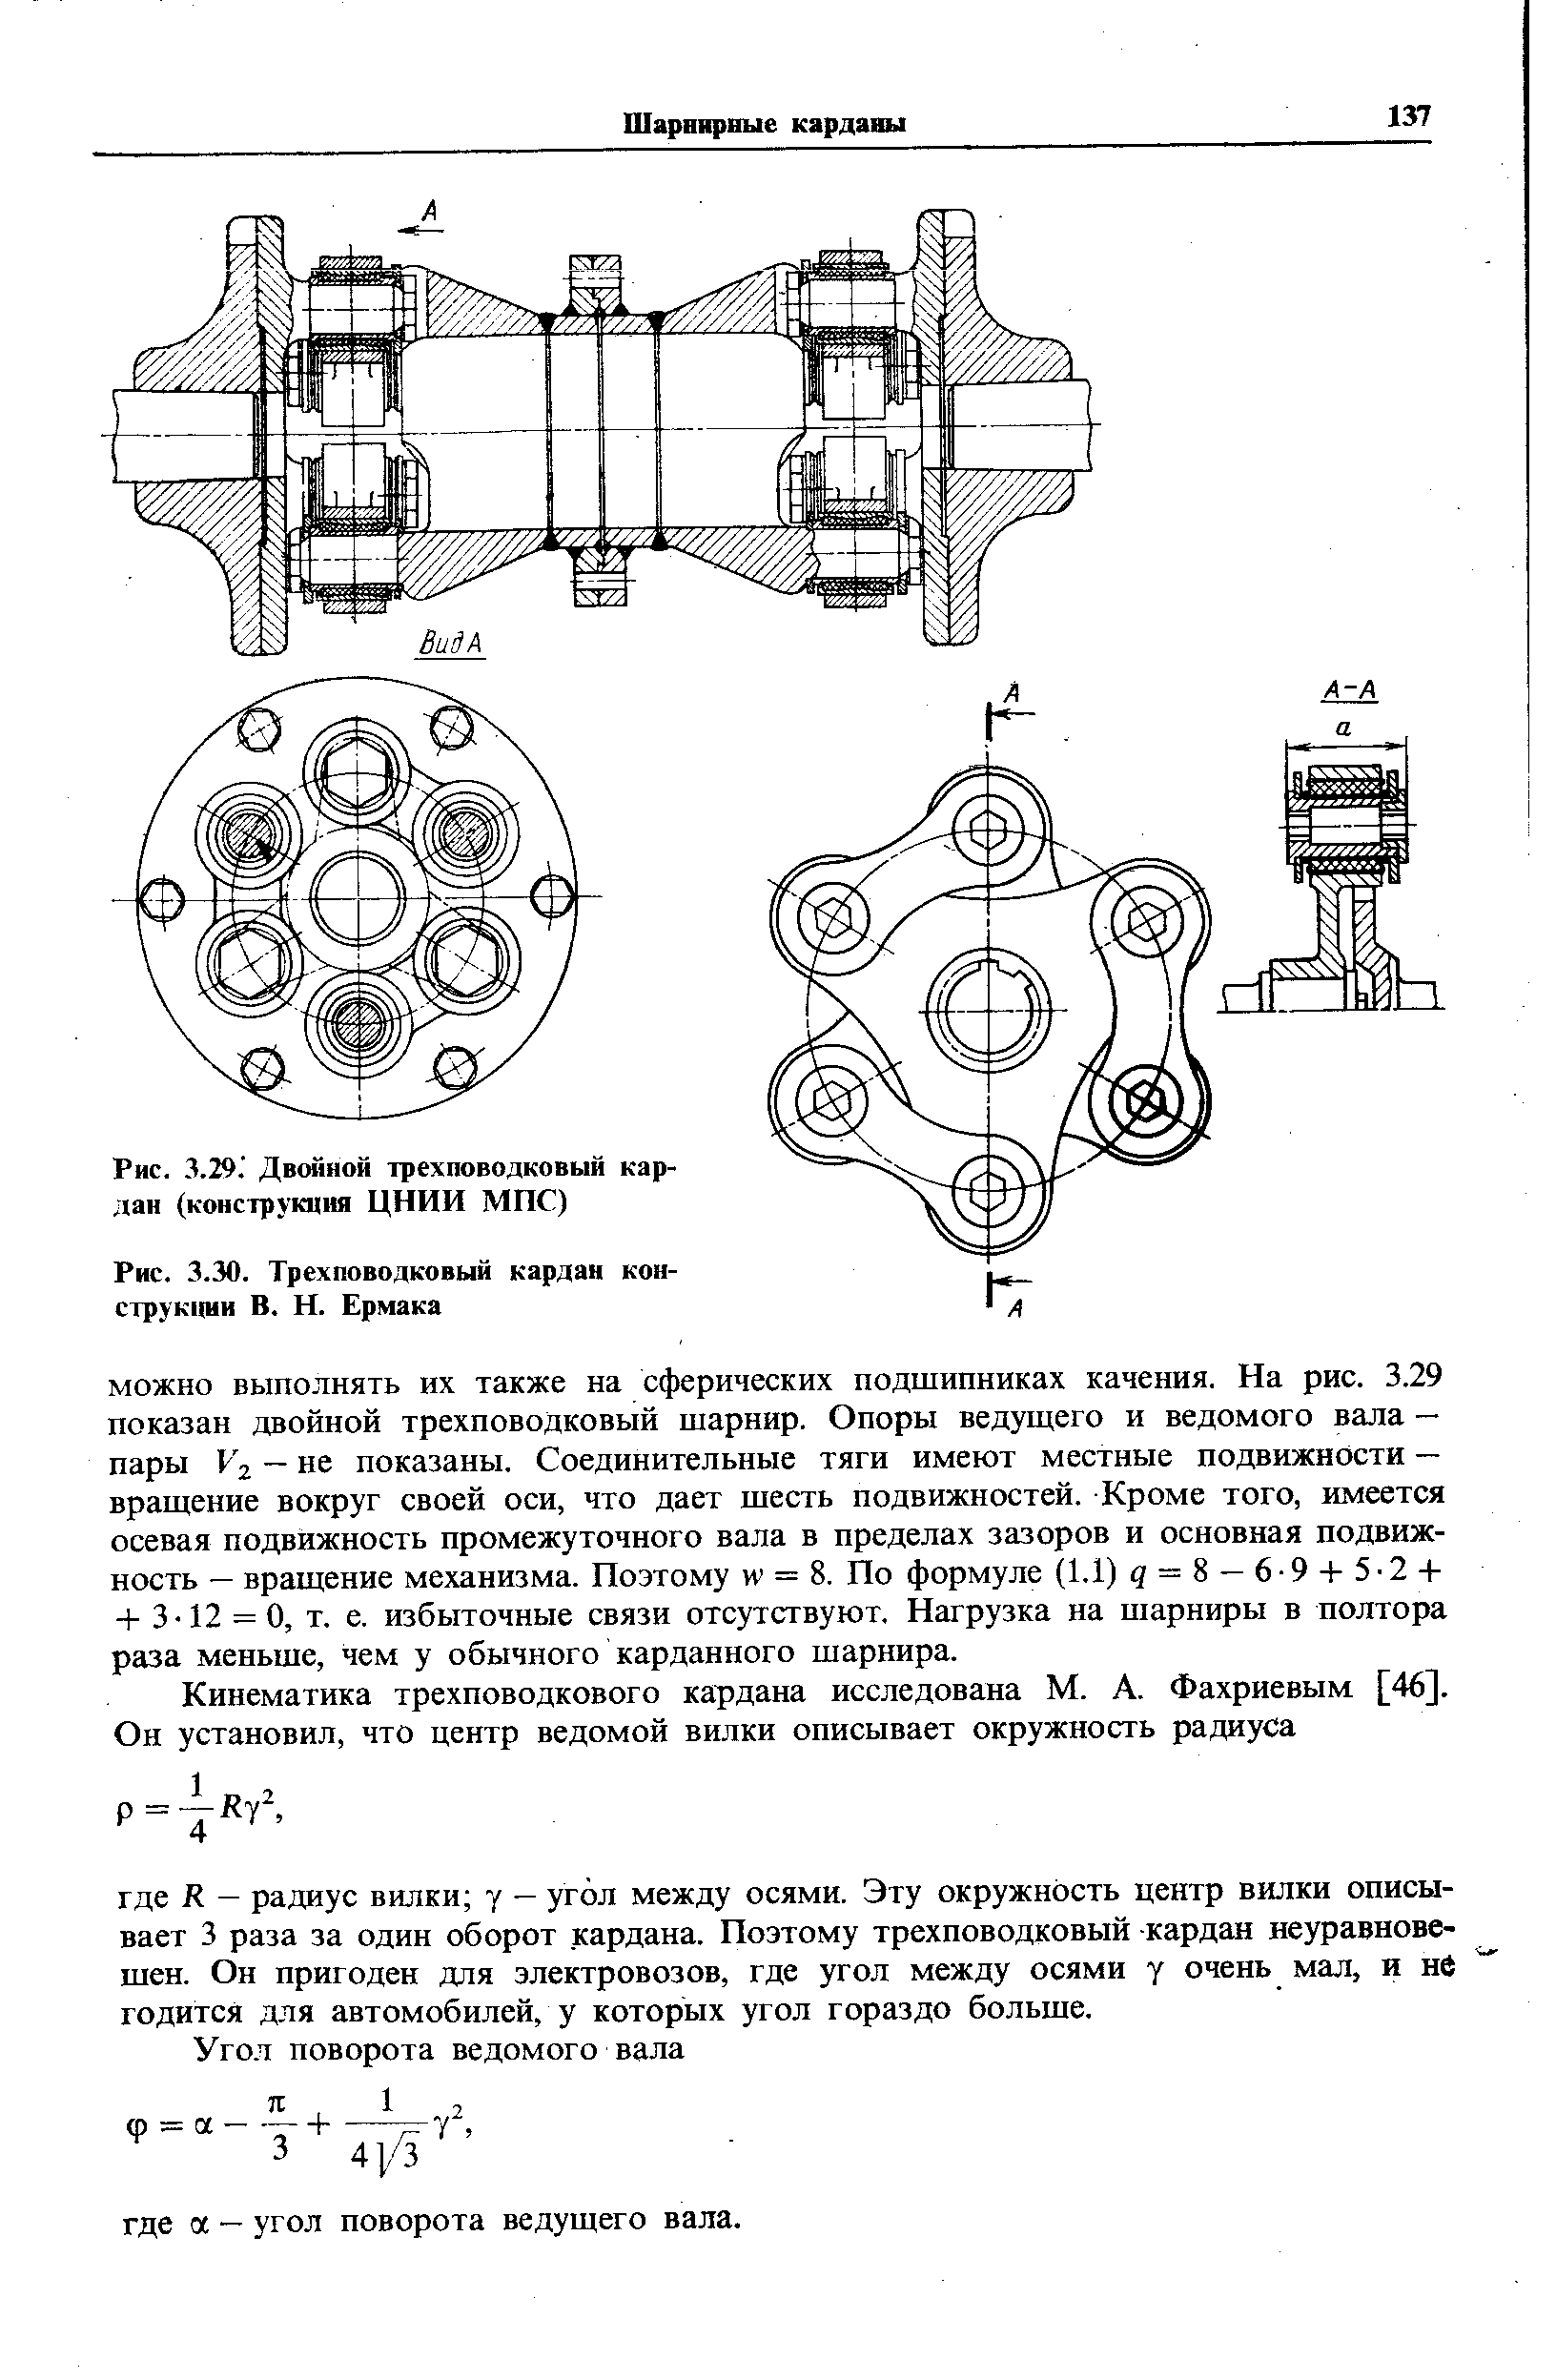 Рис. 3.29. Двойной трехповодковый кардан (конструкция ЦНИИ МПС)
